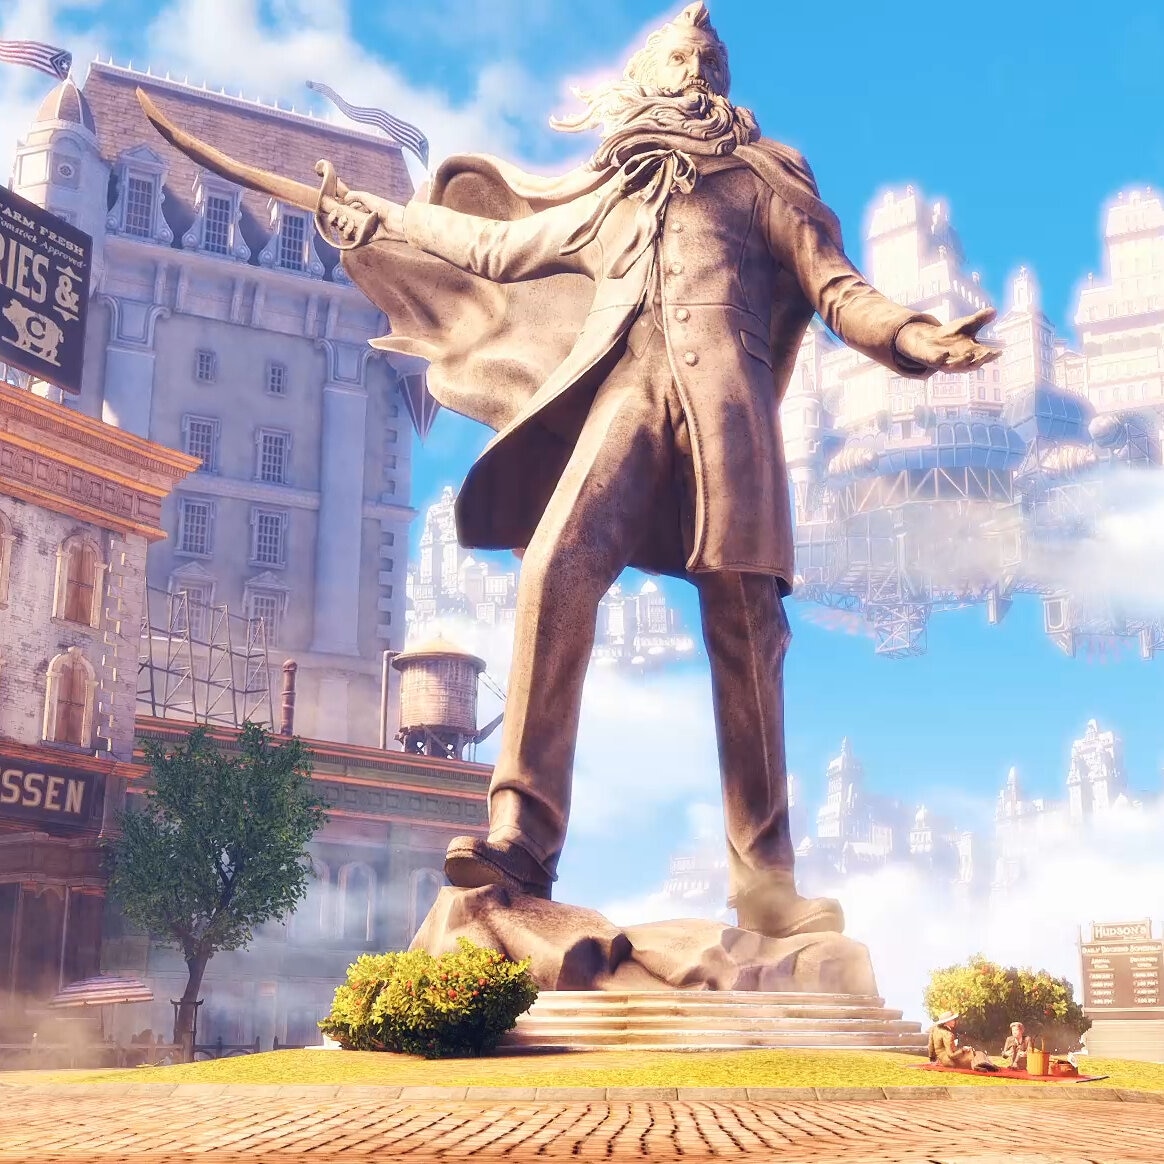 Bioshock Infinite Statue of the Prophet looped 21:9 3440x1440 60fps